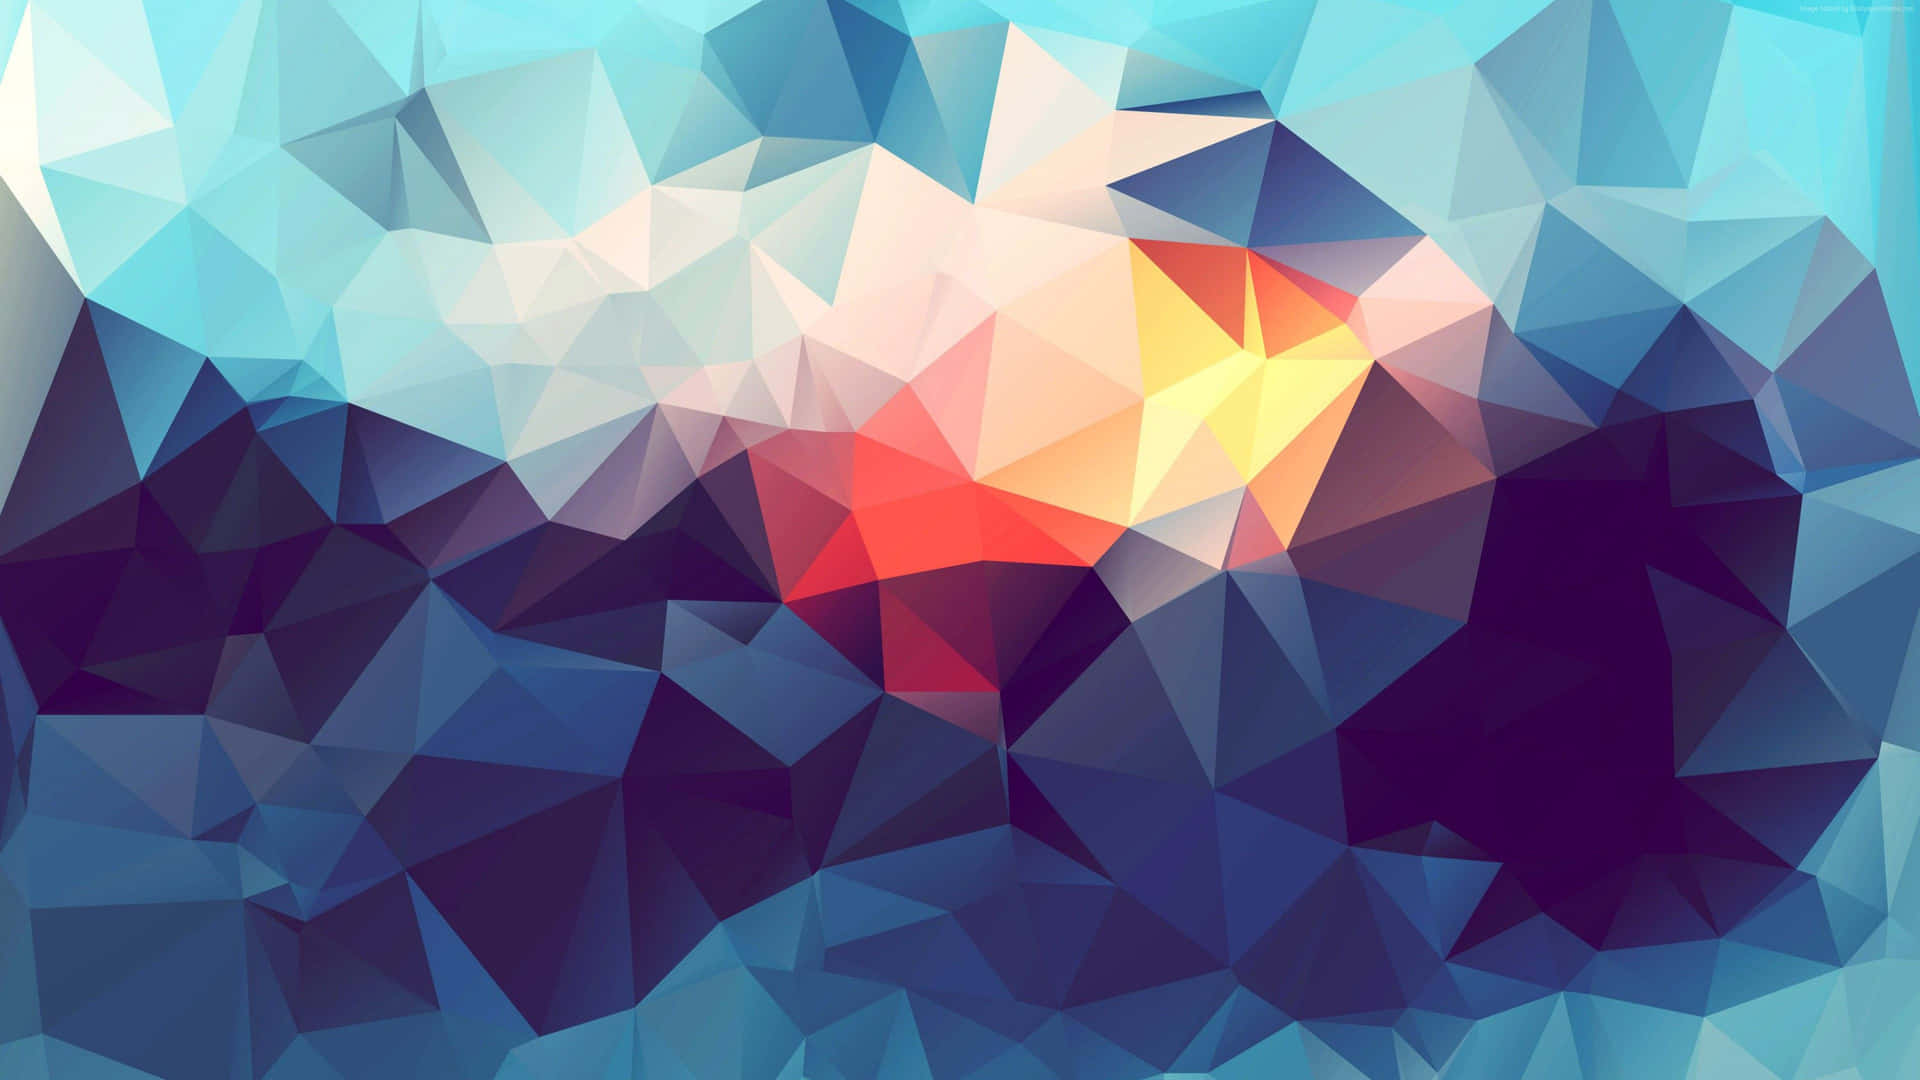 Abstract Polygonal Sunrise Art4 K.jpg Wallpaper